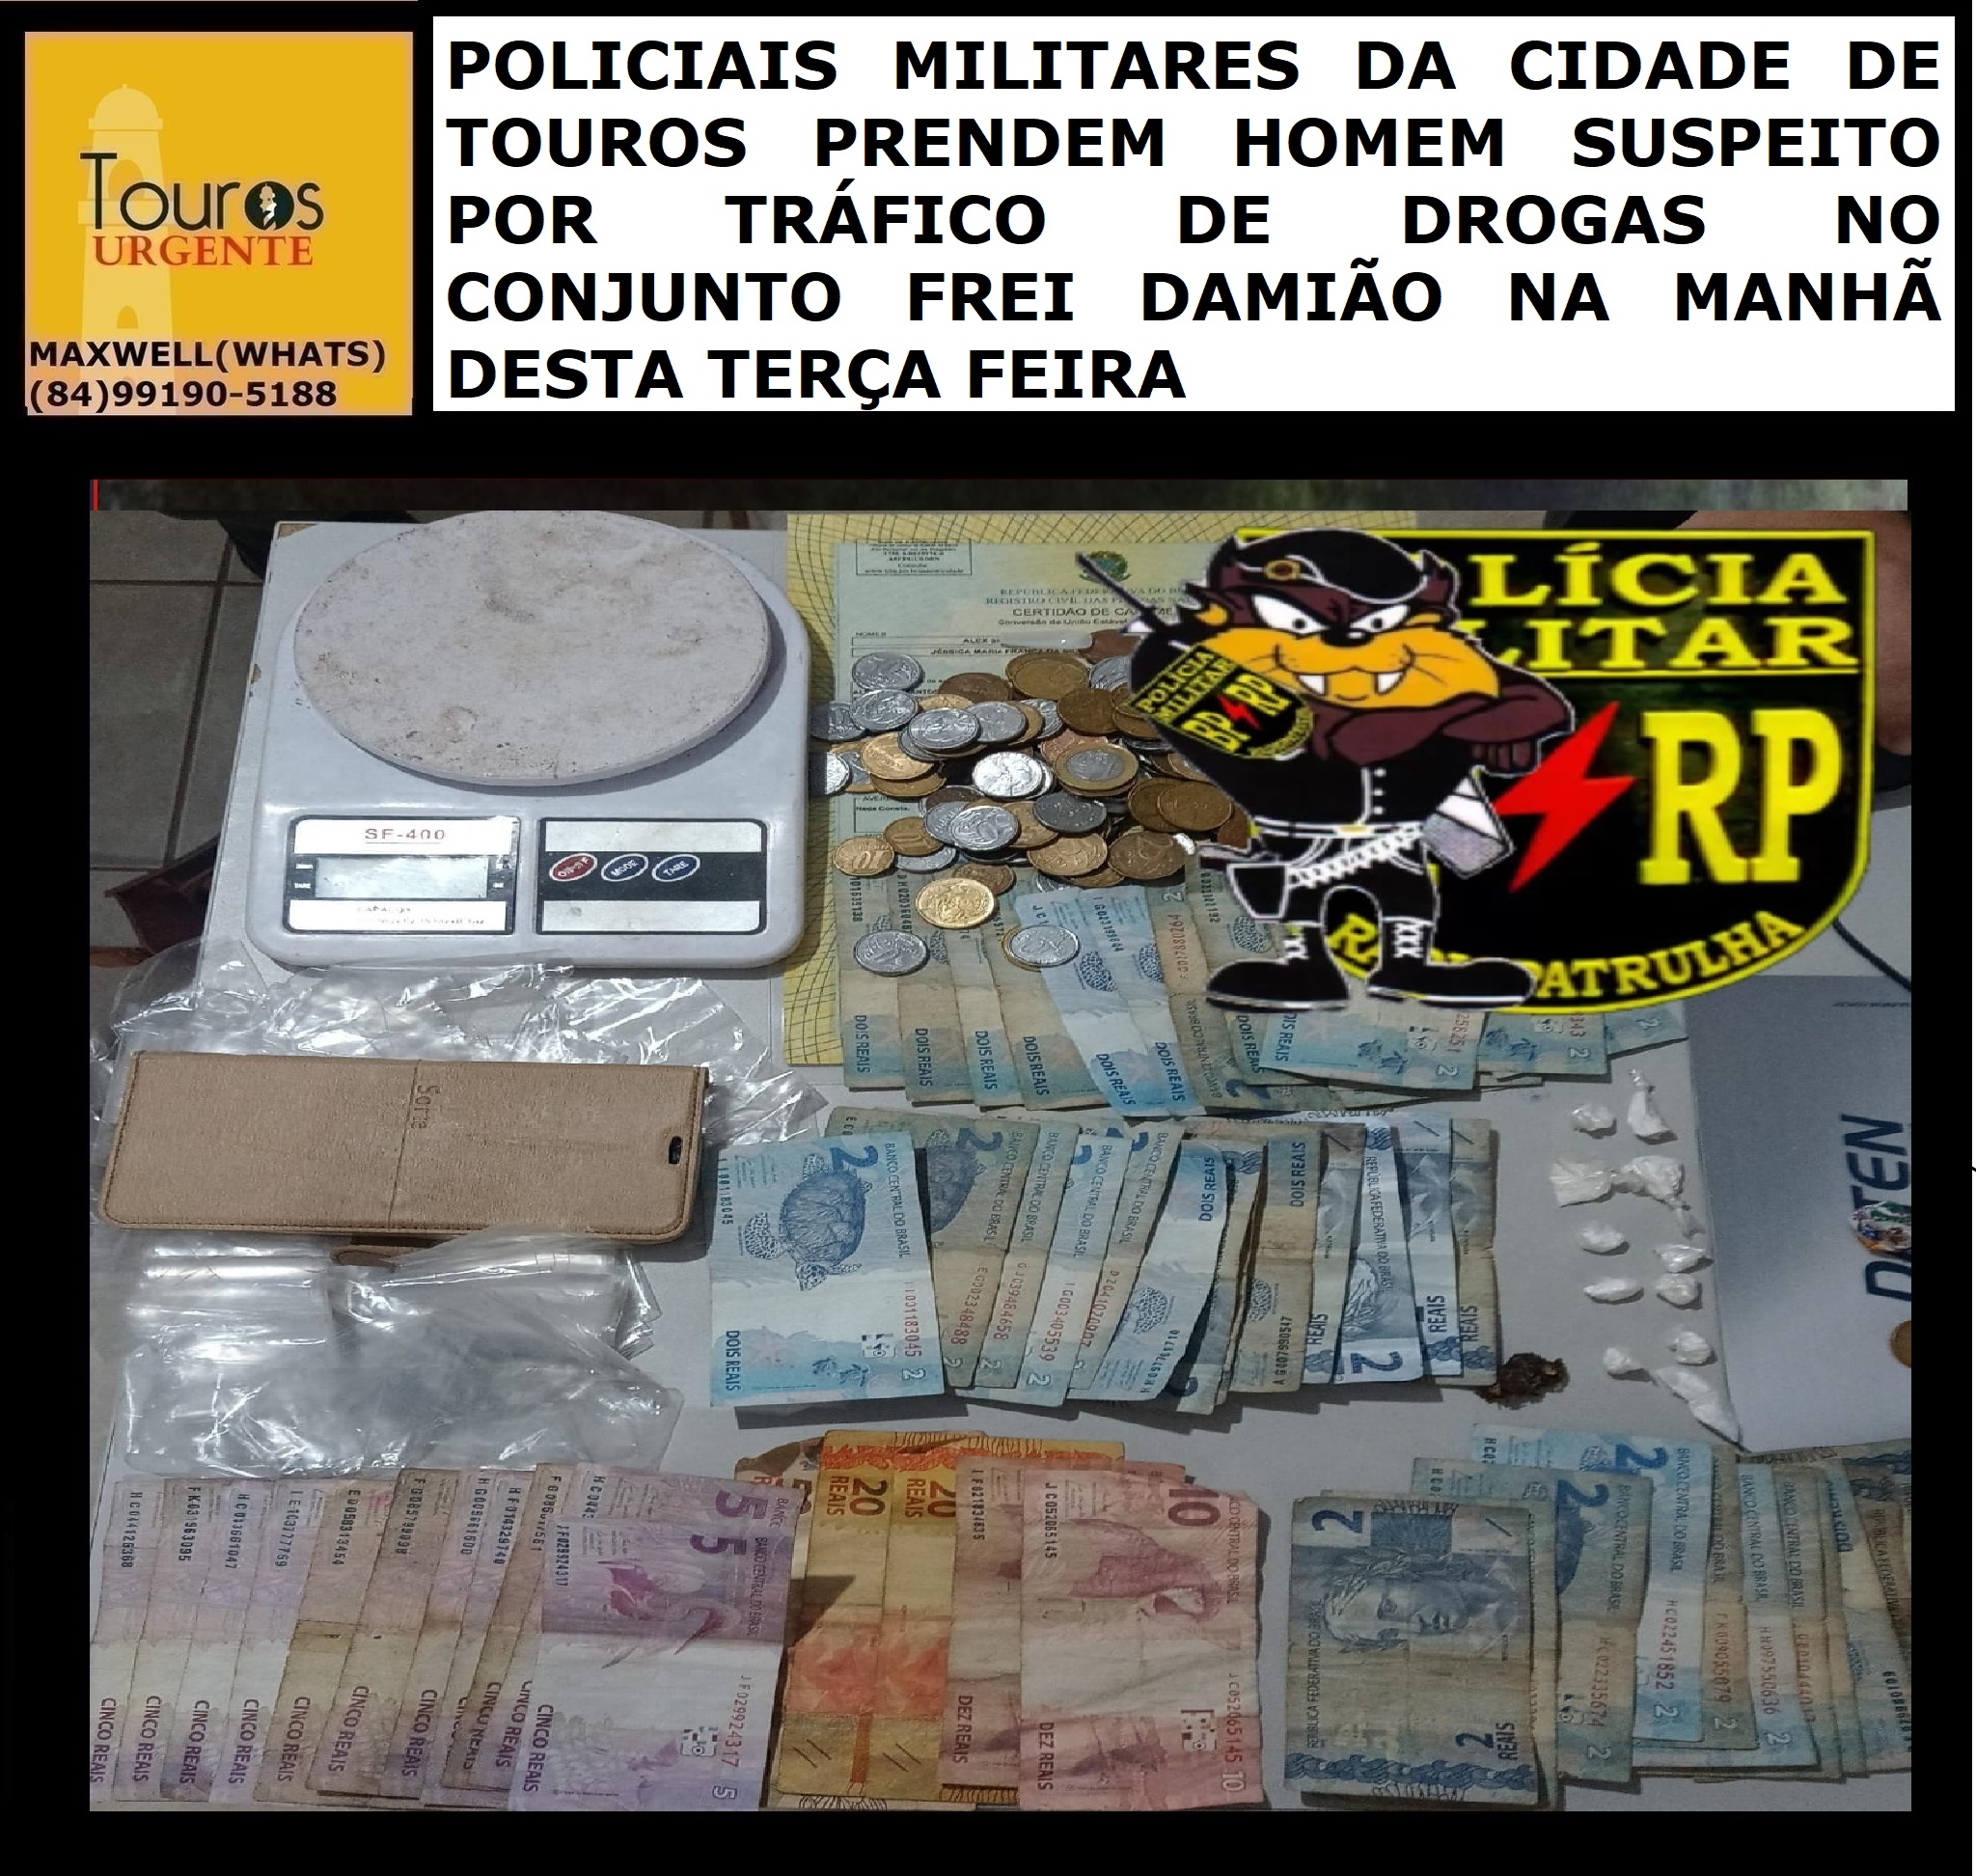 ​POLICIAIS MILITARES DA CIDADE DE TOUROS PRENDEM HOMEM SUSPEITO POR